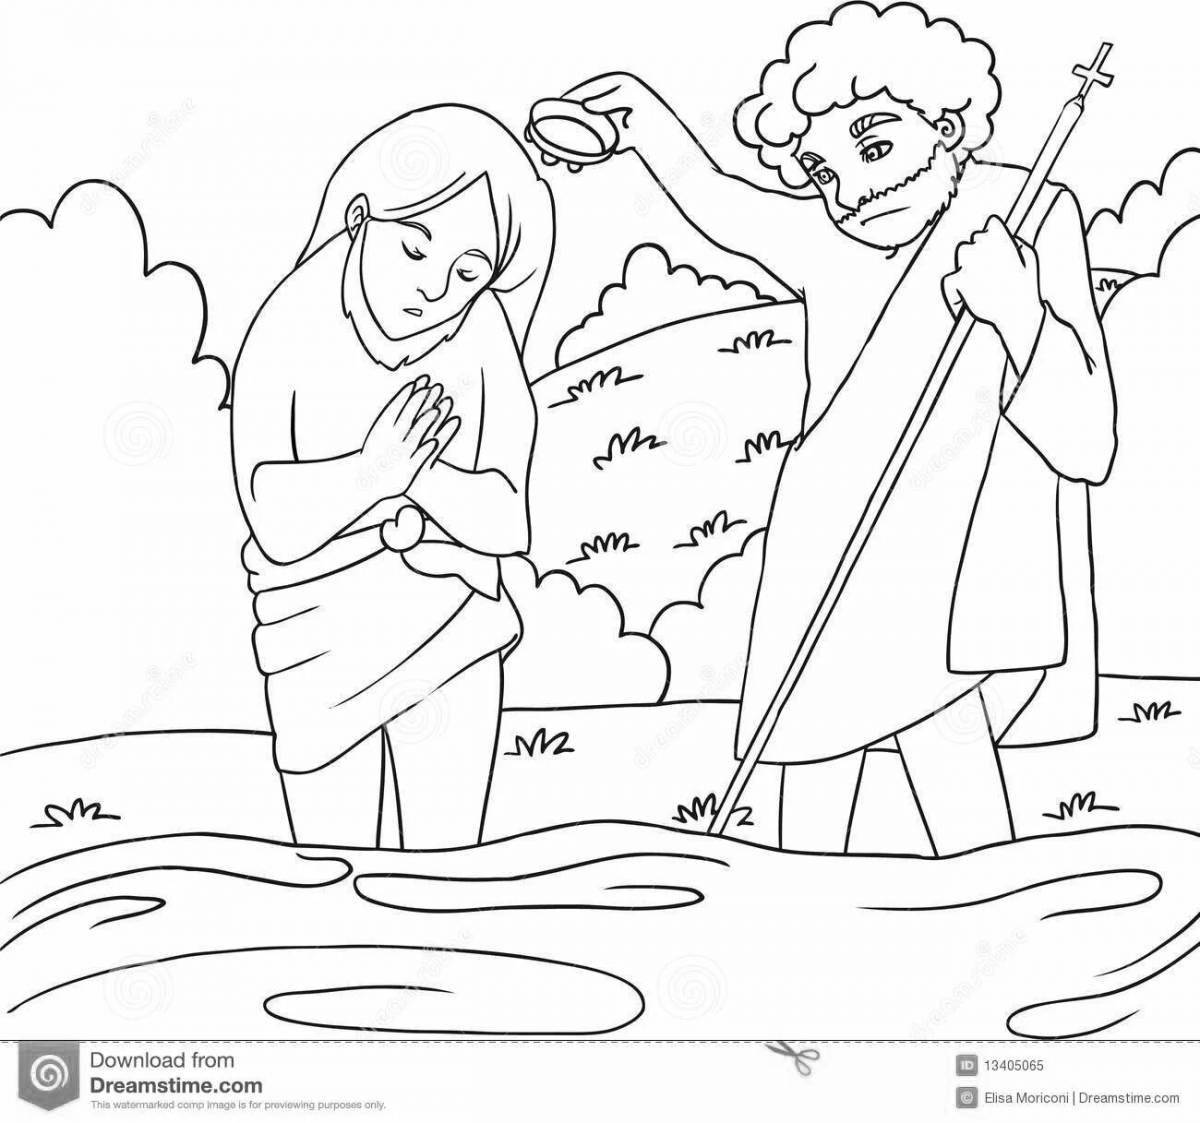 Ярко раскрашенная страница крещения иисуса